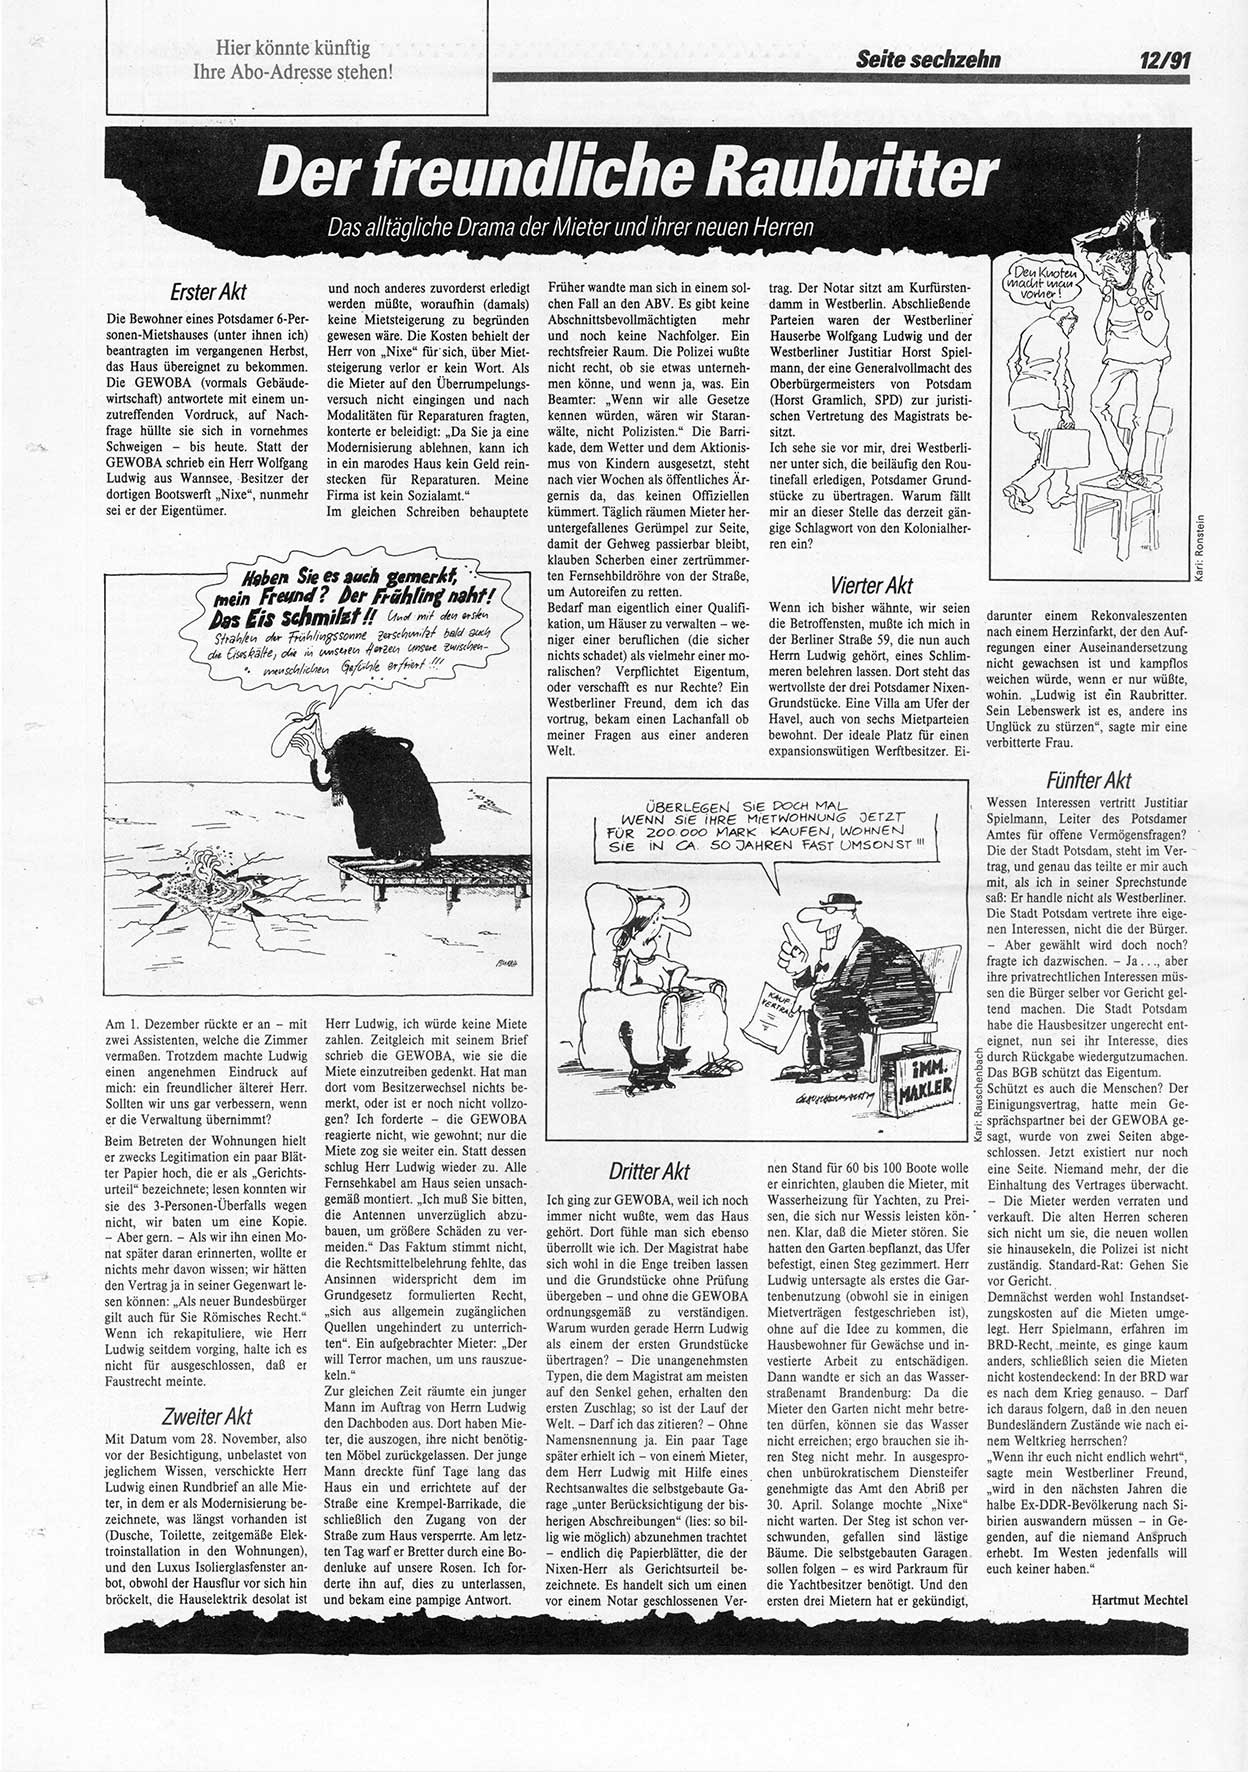 Die Andere, Unabhängige Wochenzeitung für Politik, Kultur und Kunst, Ausgabe 12 vom 20.3.1991, Seite 16 (And. W.-Zg. Ausg. 12 1991, S. 16)